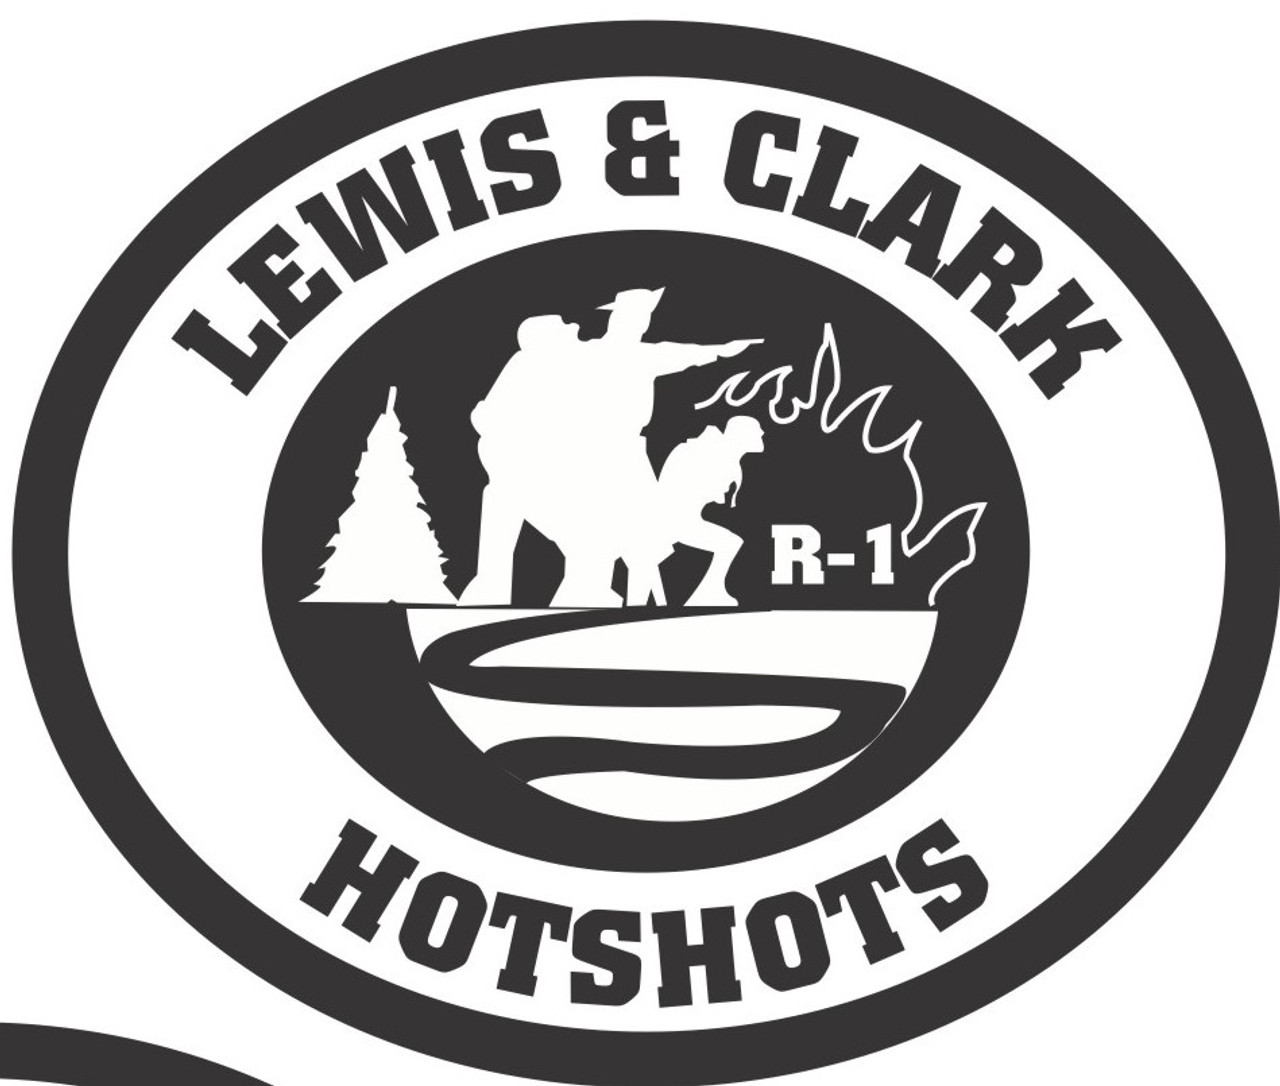 Lewis & Clark Hotshots Buckle (RESTRICTED)